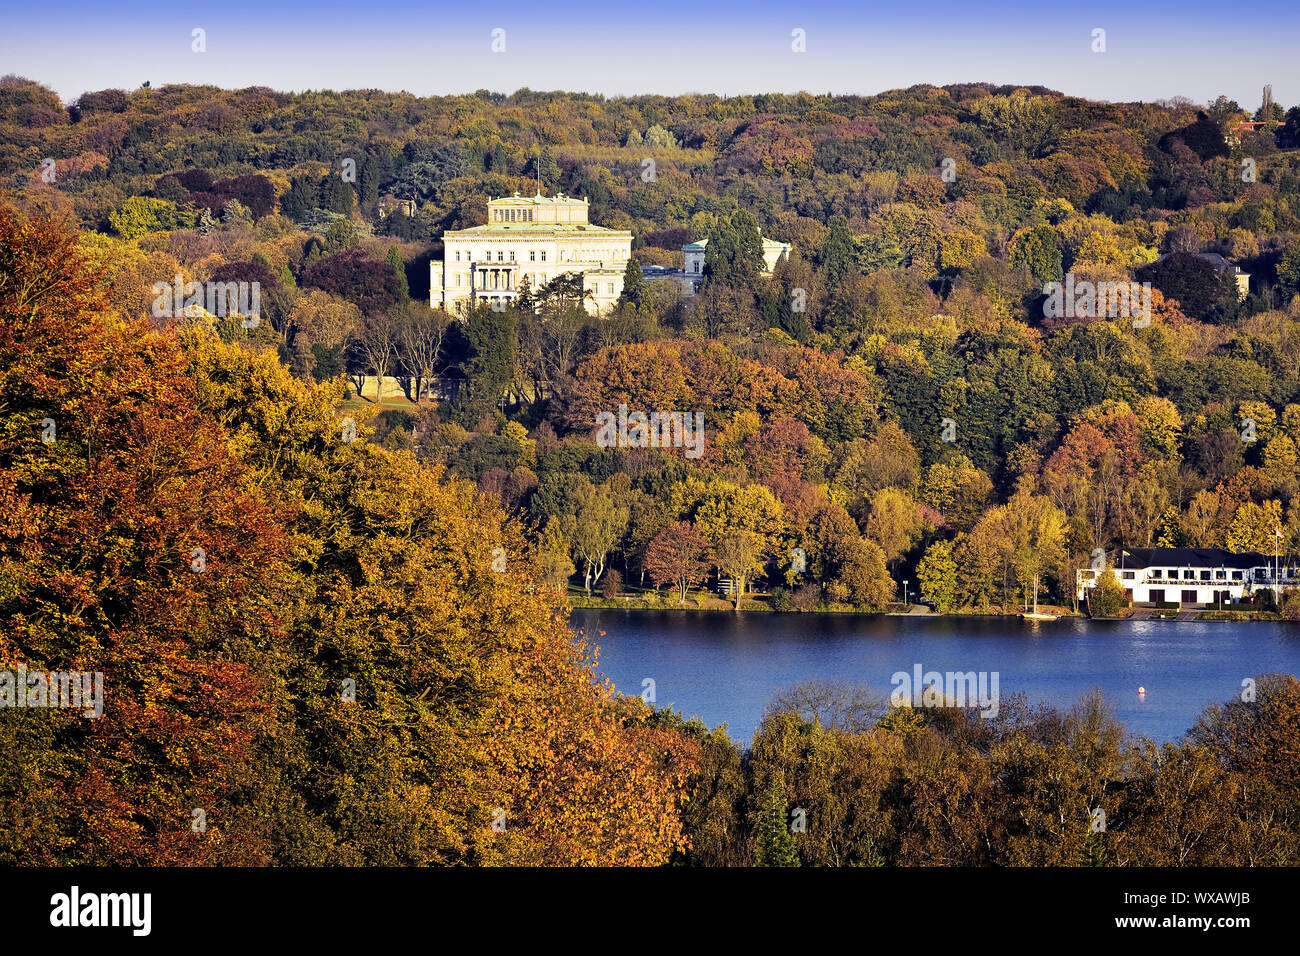 Villa Huegel e il lago Baldeneysee in autunno, Essen, la zona della Ruhr, Germania, Europa Foto Stock